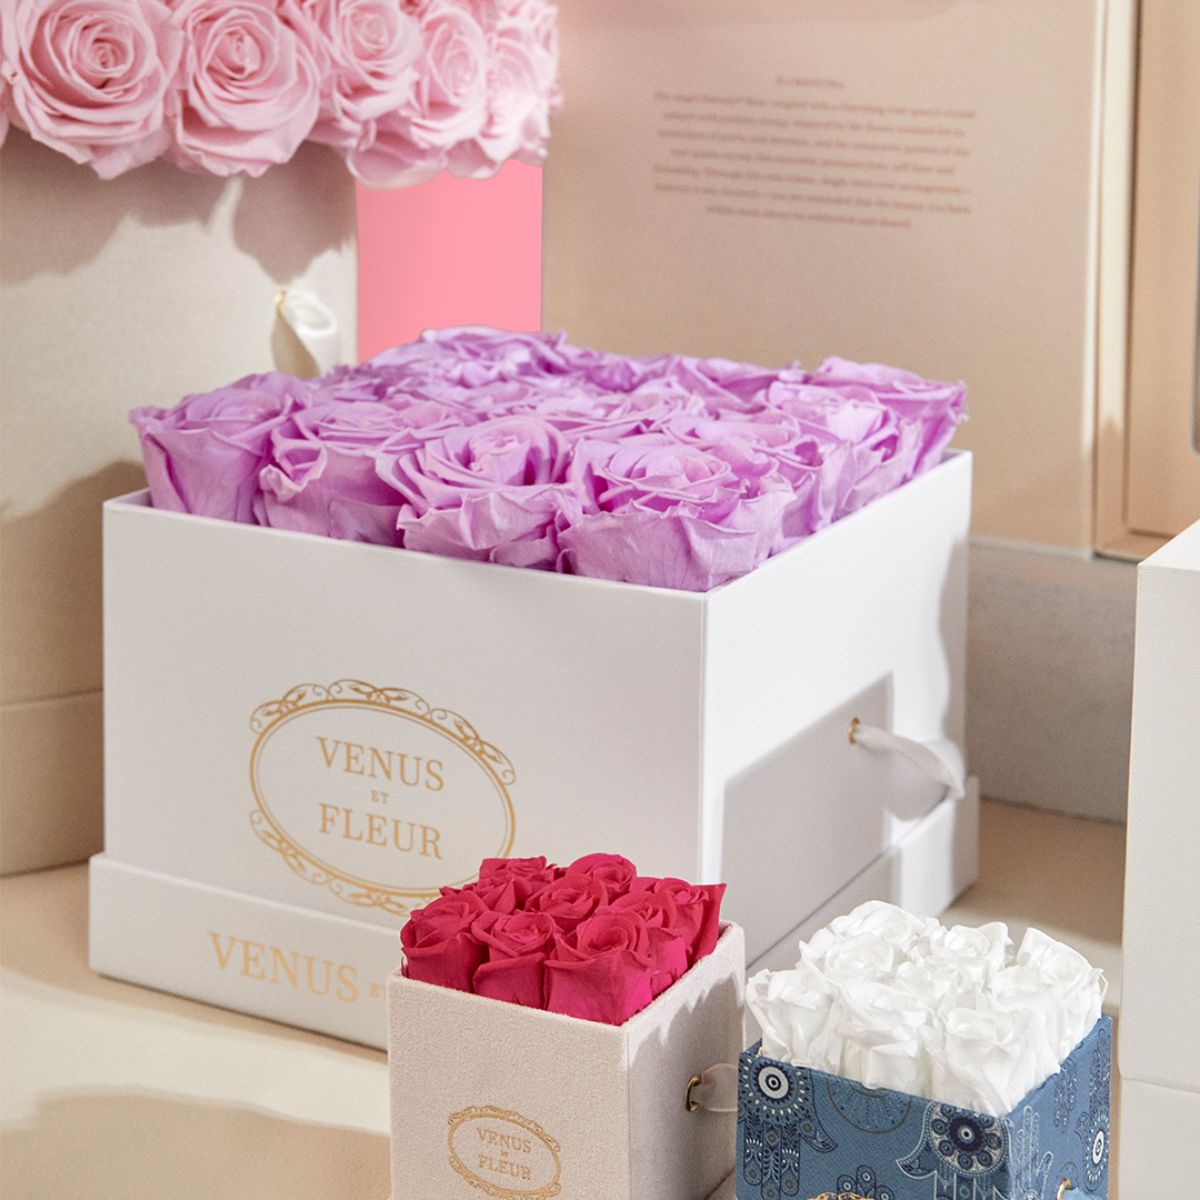 Luxury Roses, Customized Gifts & Flower Arrangements - Venus et Fleur